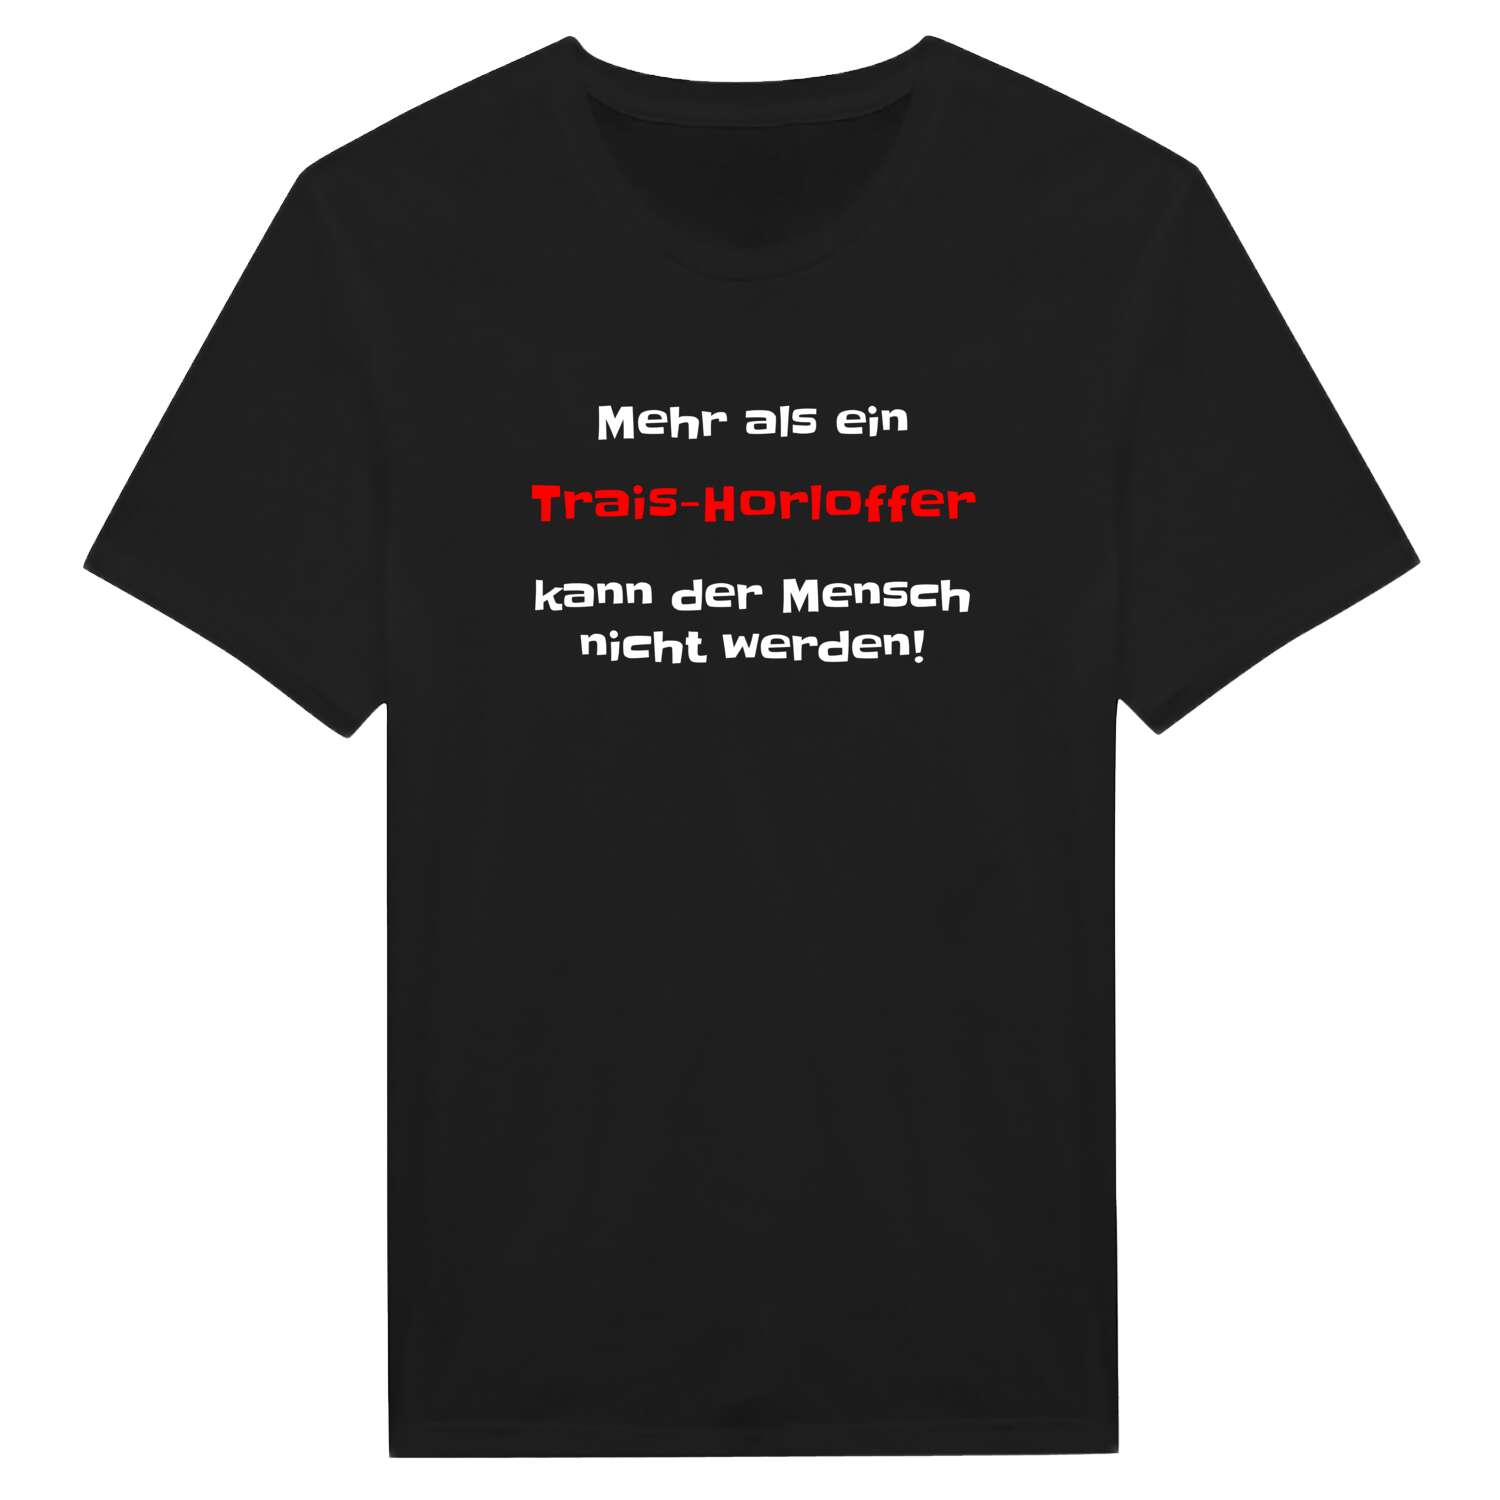 Trais-Horloff T-Shirt »Mehr als ein«